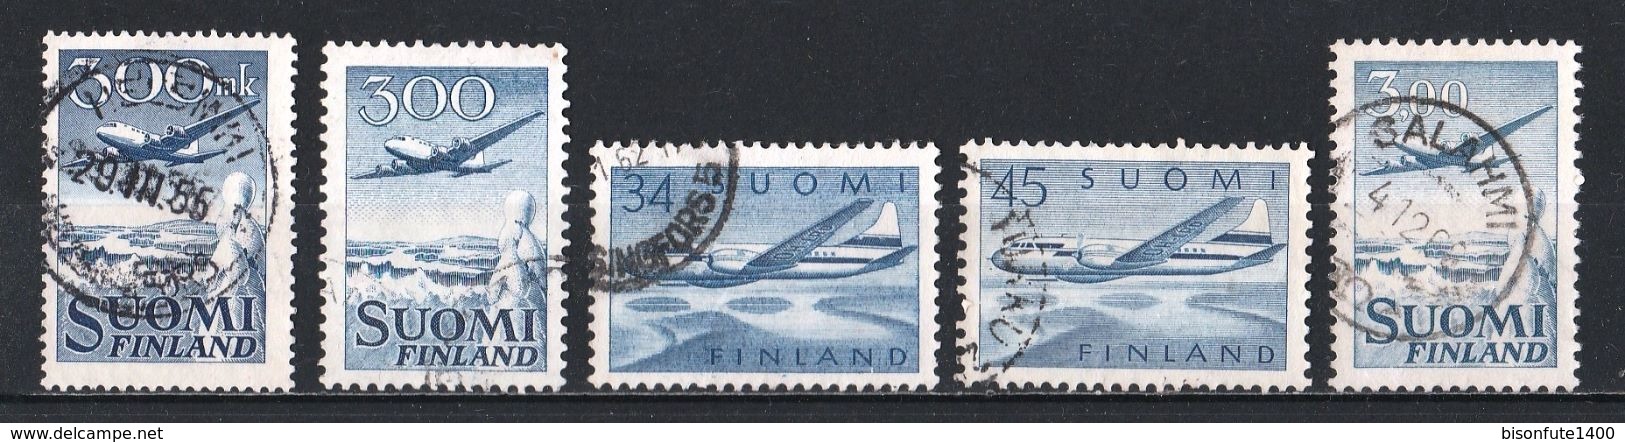 FINLANDE Poste Aérienne : Timbres Yvert & Tellier N° 3 - 4 - 5 - 6 - 9 - 10 Et 11. - Oblitérés